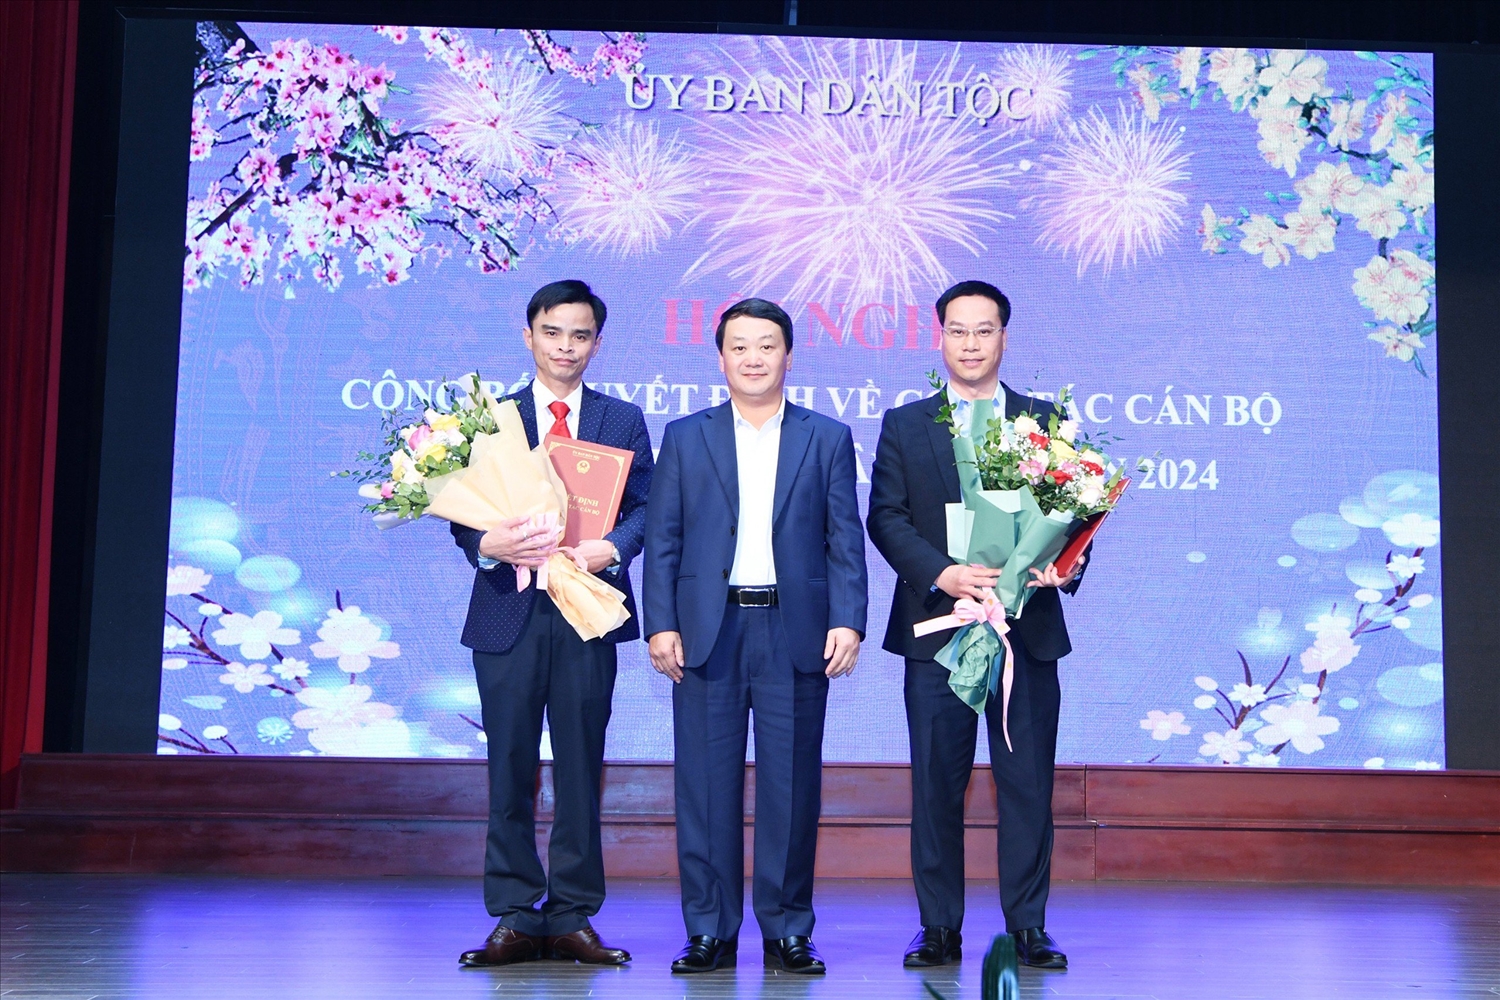 Bộ trưởng, Chủ nhiệm UBDT Hầu A Lềnh trao các quyết định về công tác cán bộ cho ông Nguyễn Văn Chính và ông Phạm Xuân Hoàng